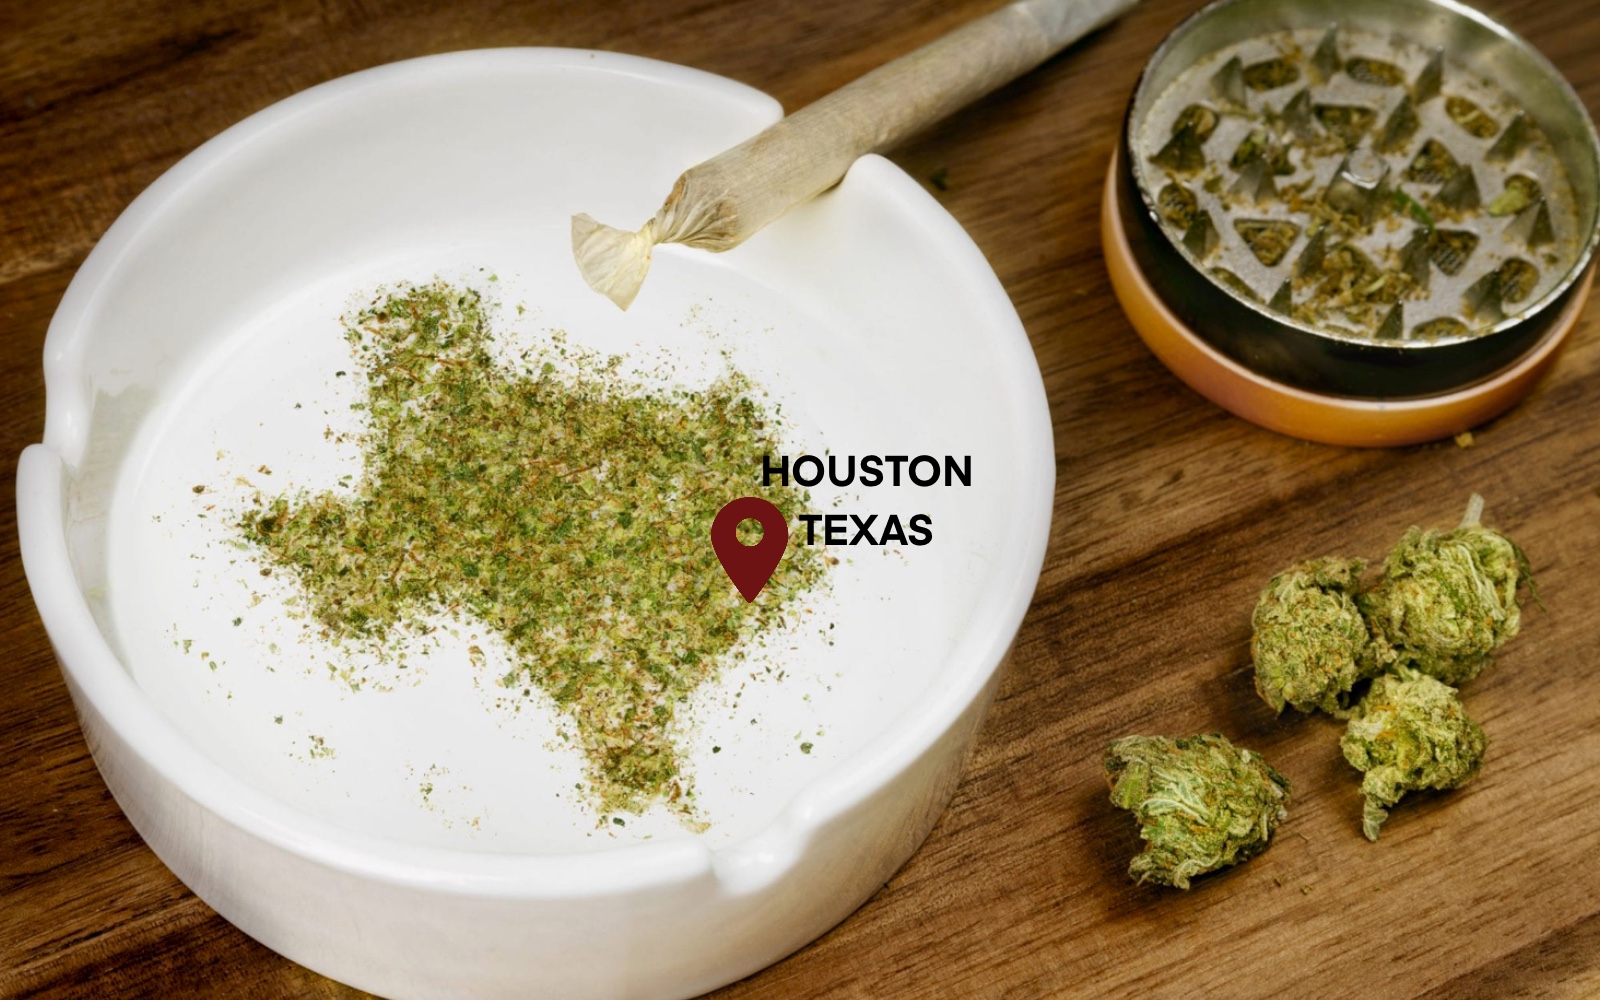 Houston Texas annuncia il piano di depenalizzazione della cannabis